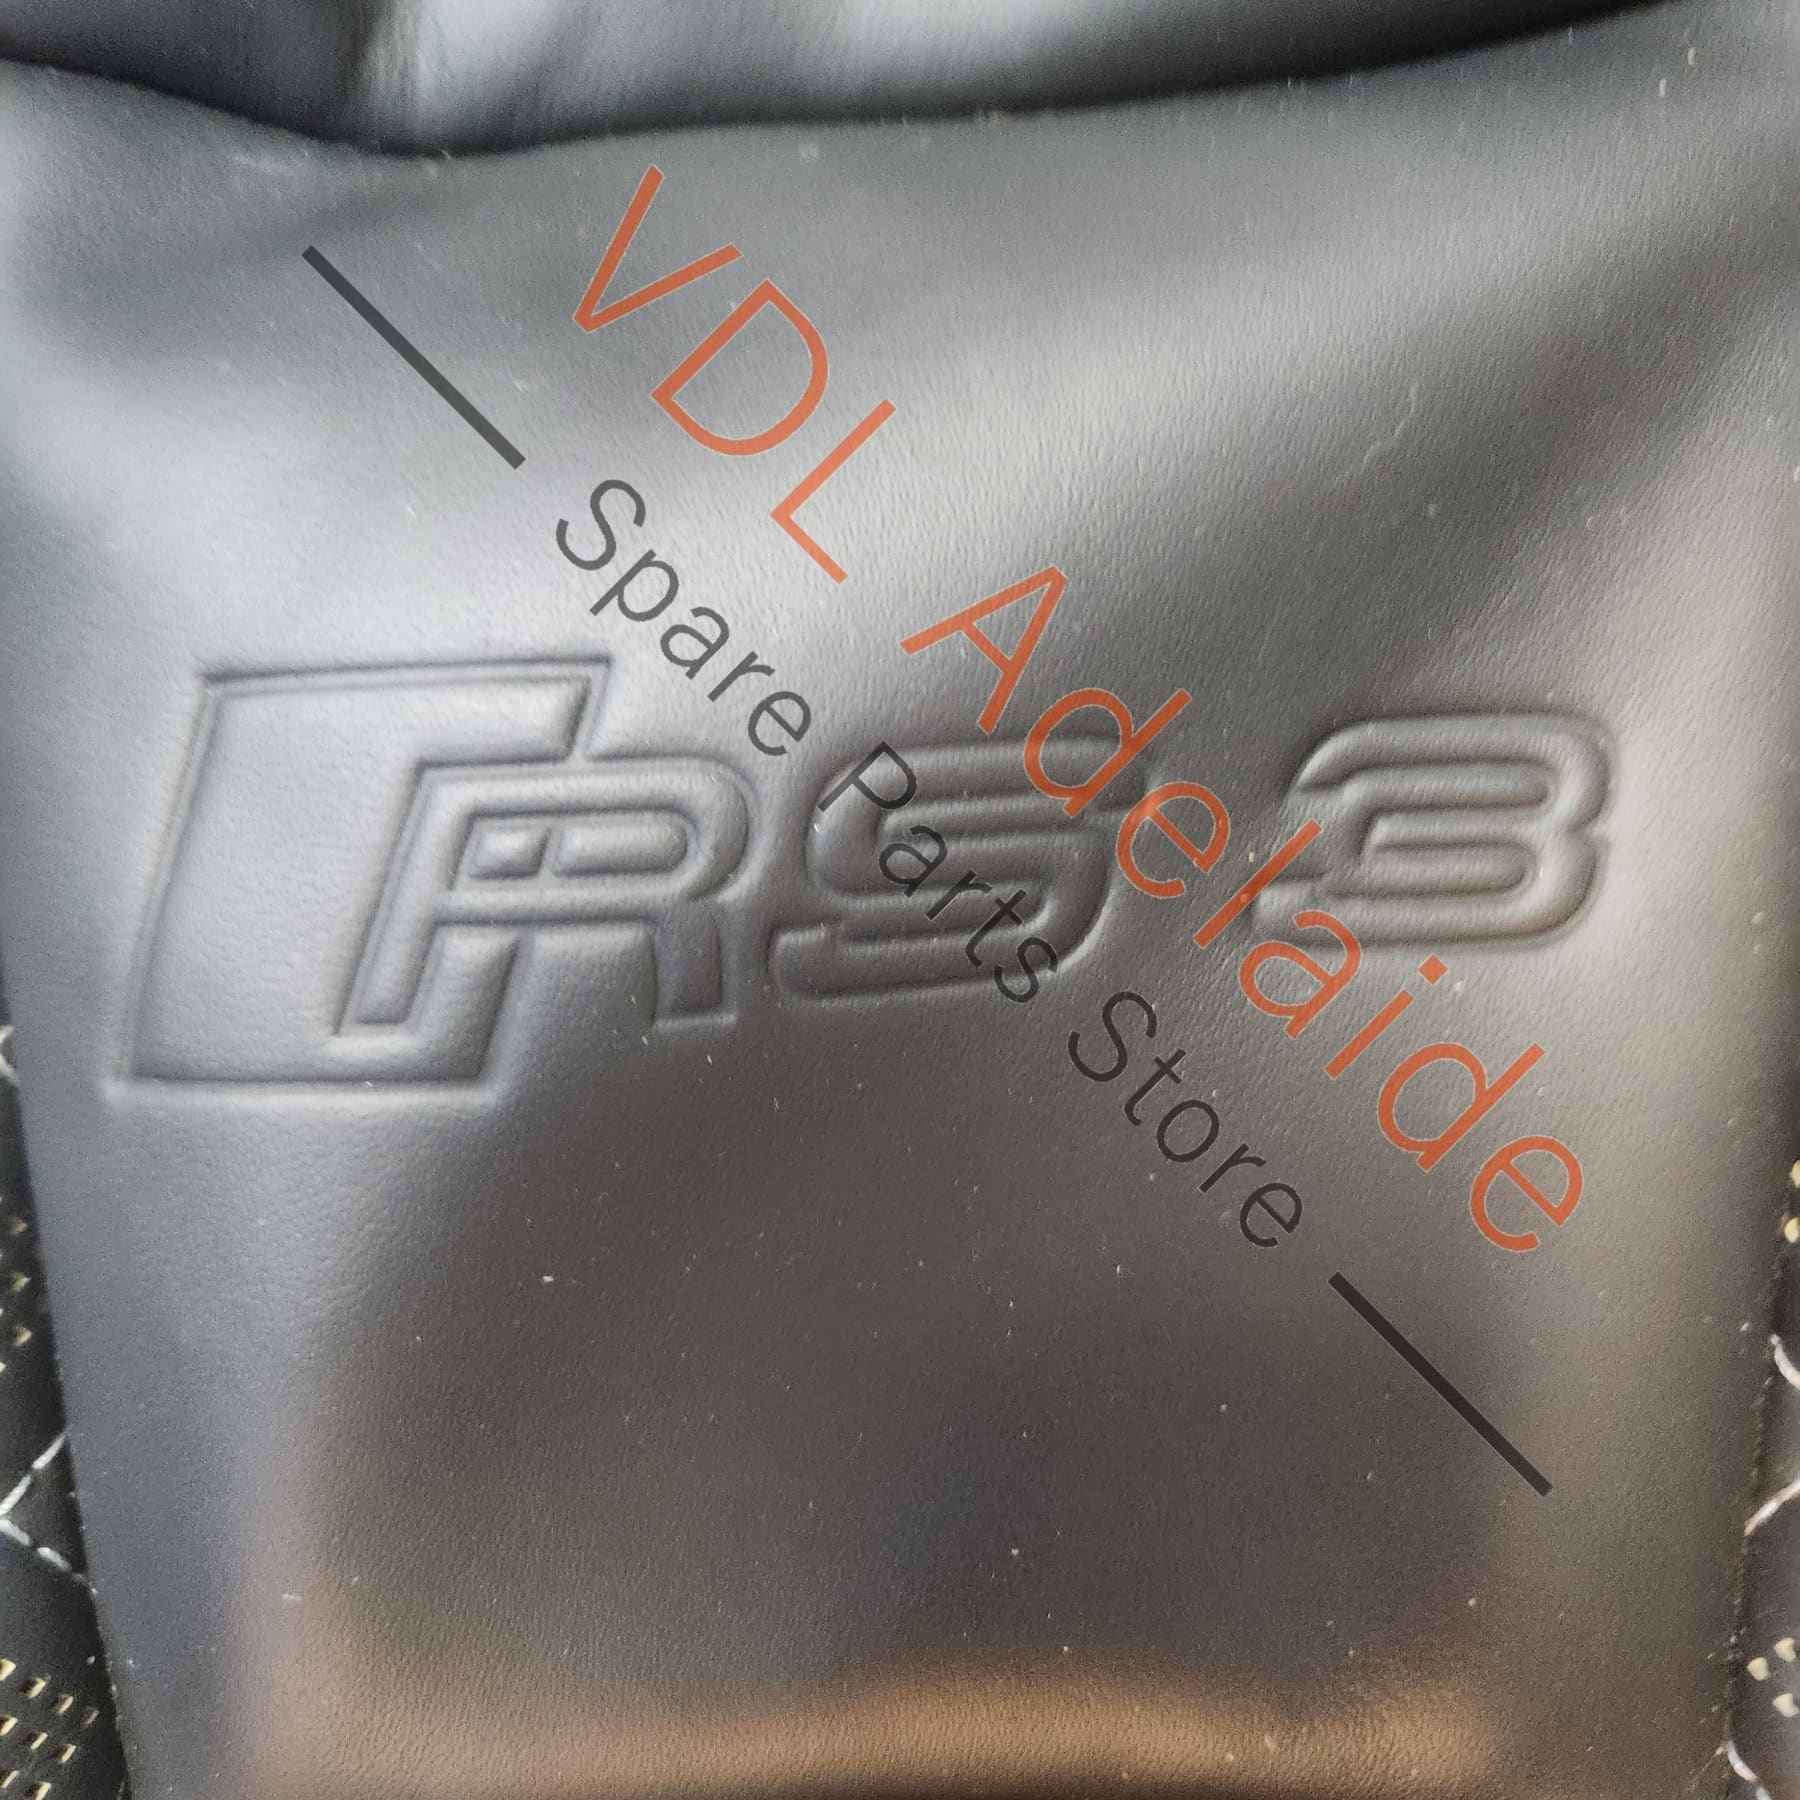 8V4881805SWJC Audi RS3 8V Front Left Seat Backrest Cover Leather Trim for Back